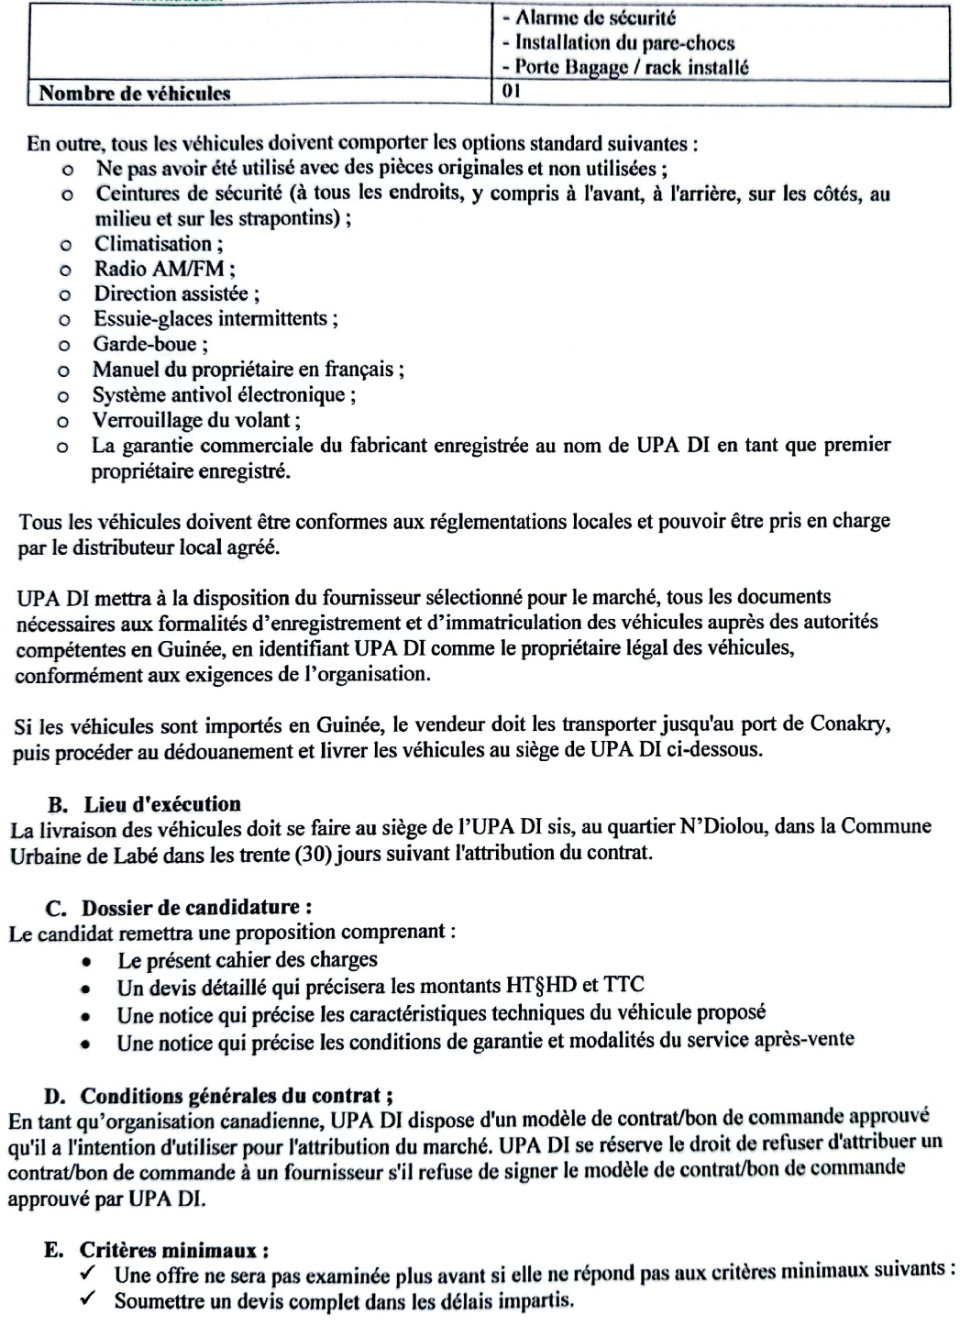 L'acquisition De Trois (3) Véhicules 4x4 Au Compte De UPA DI | Page 4